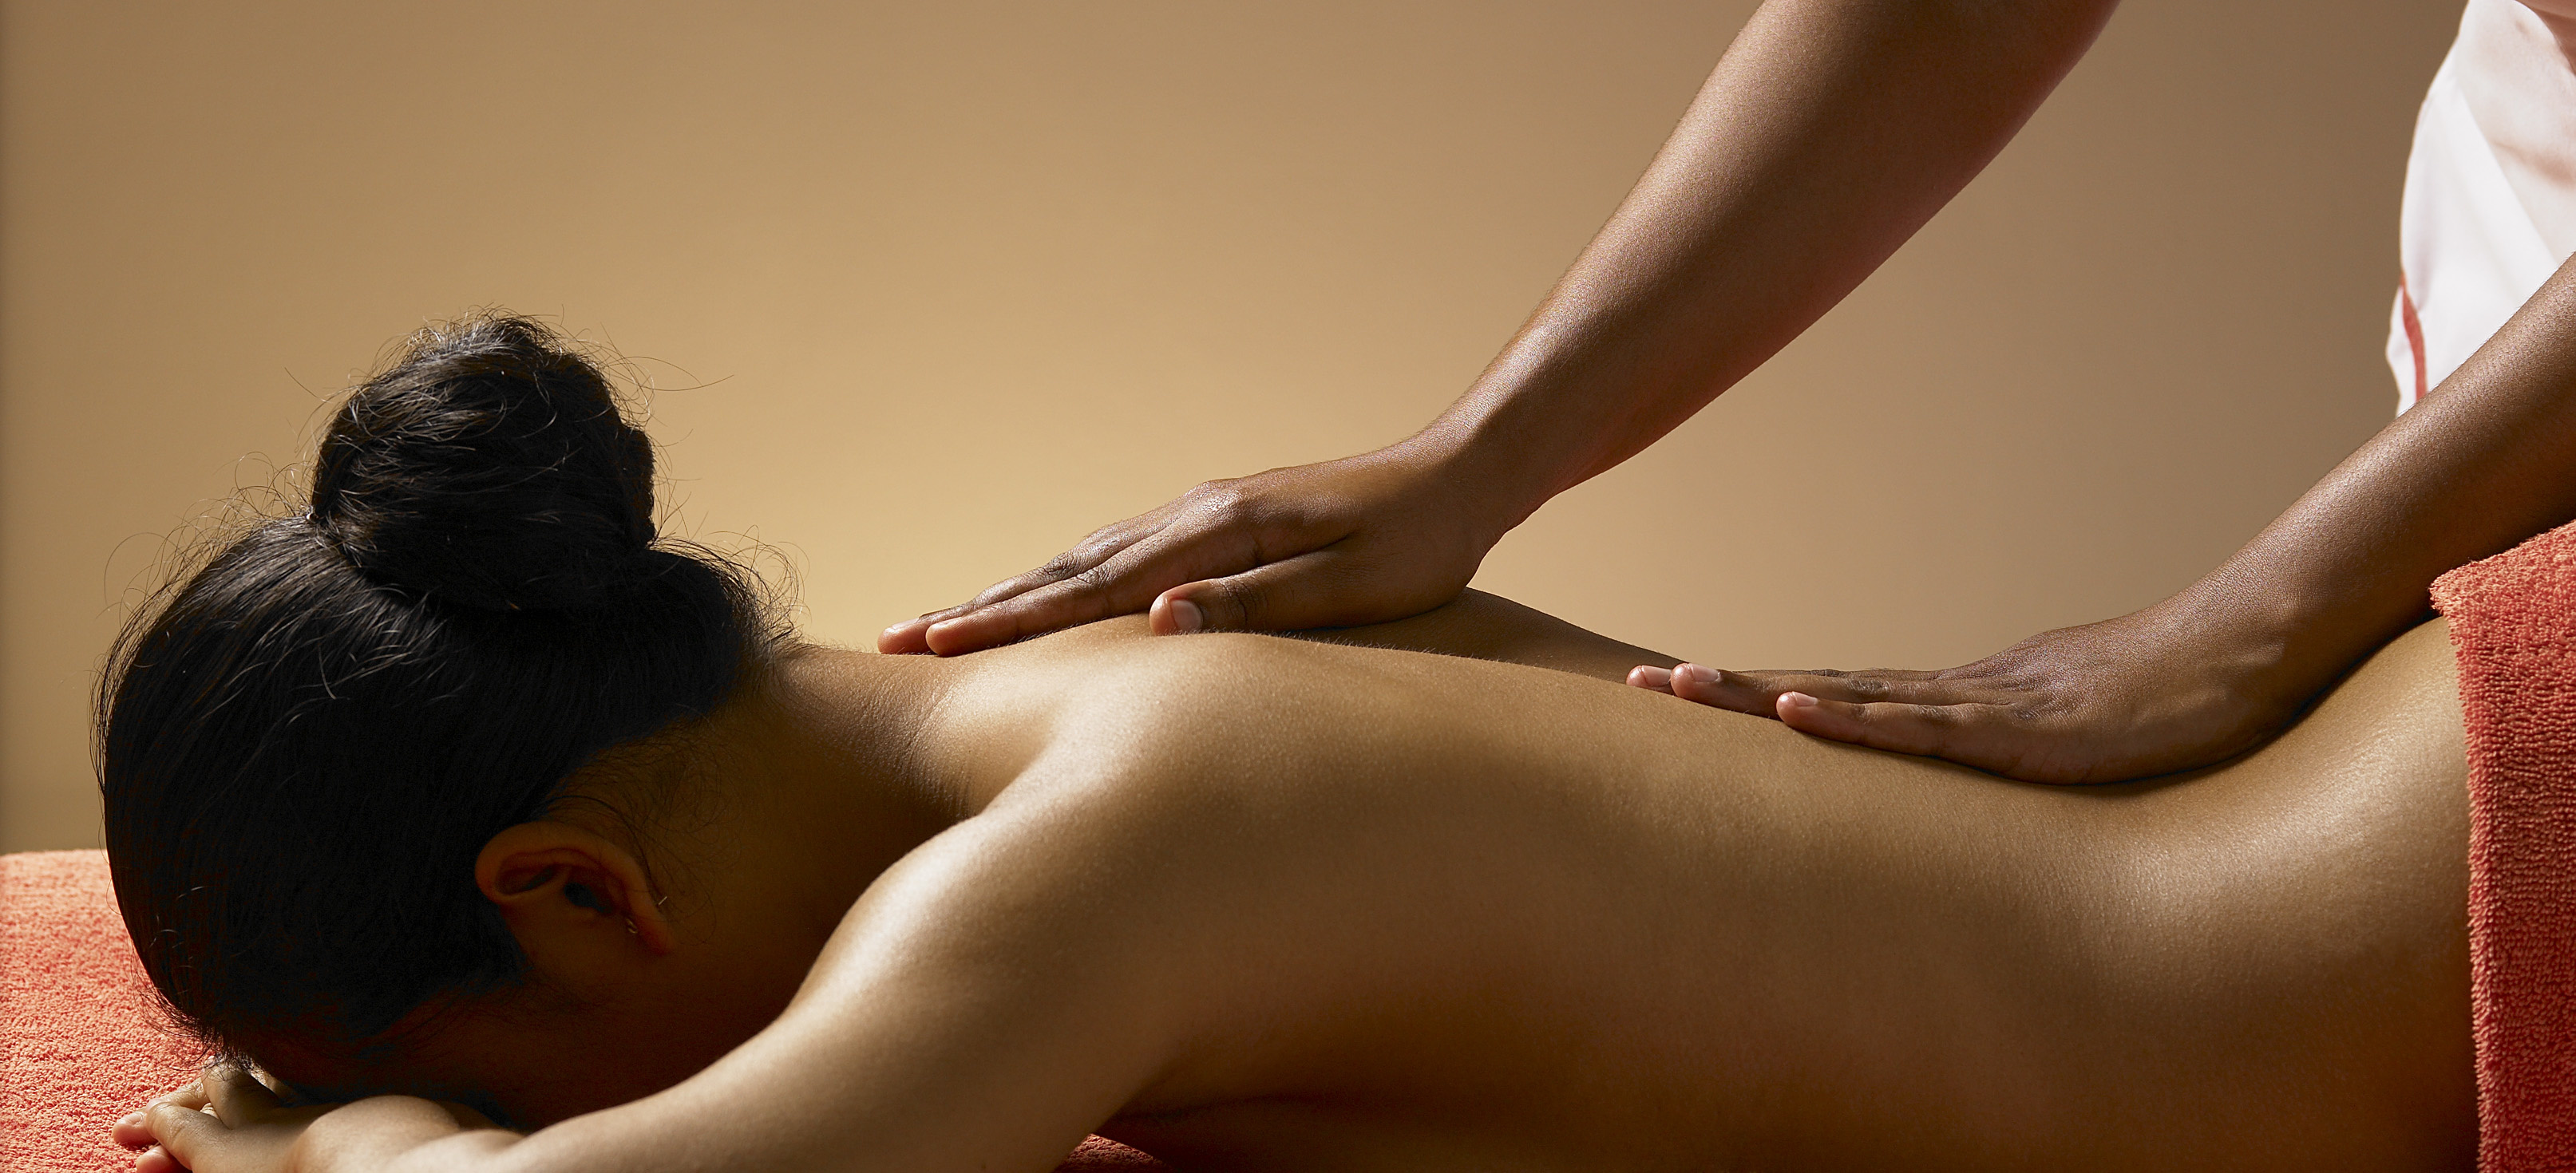 Hot body massage. Классический массаж. Классический массаж спины. Красивая спина массаж. Массаж тела для женщин.